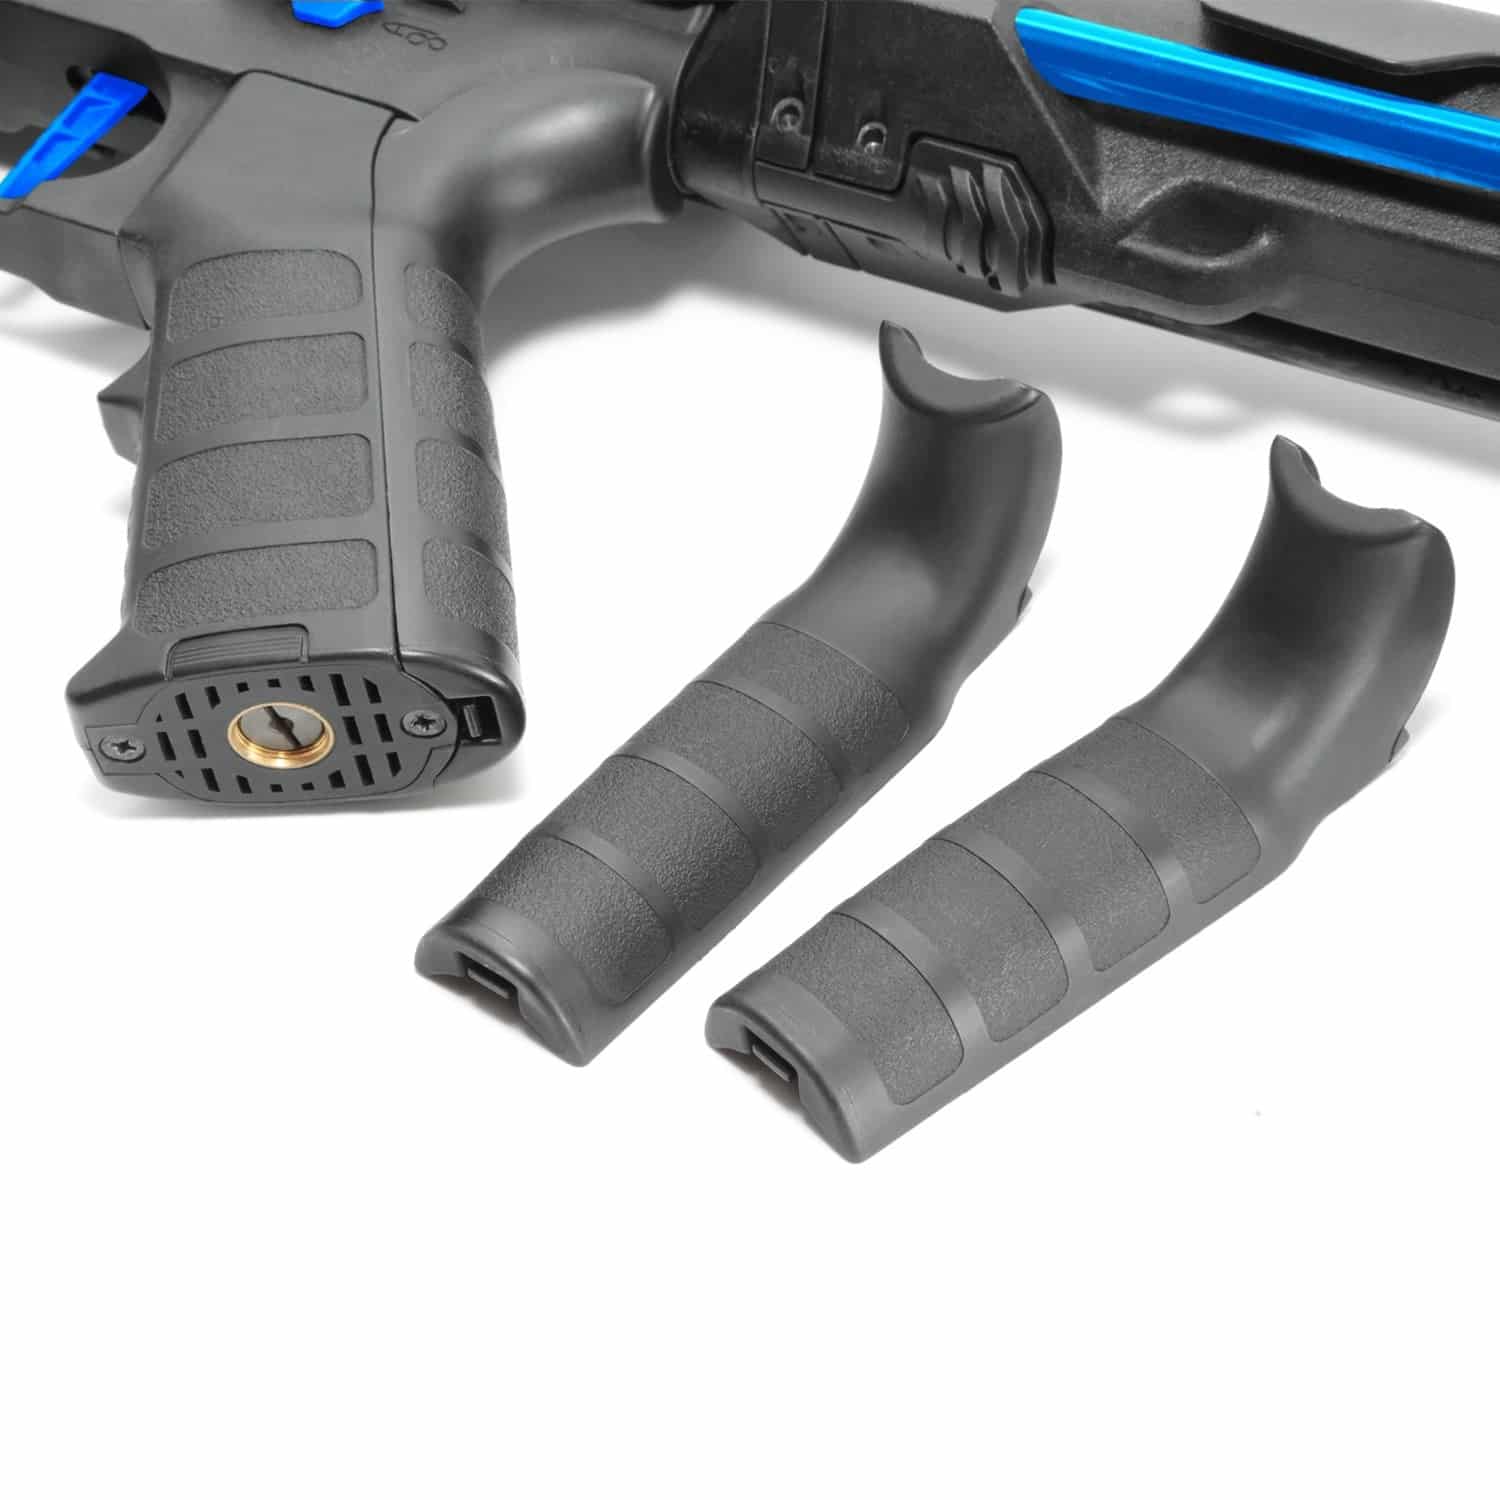 King Arms PDW 9mm SBR Long - Black & Blue